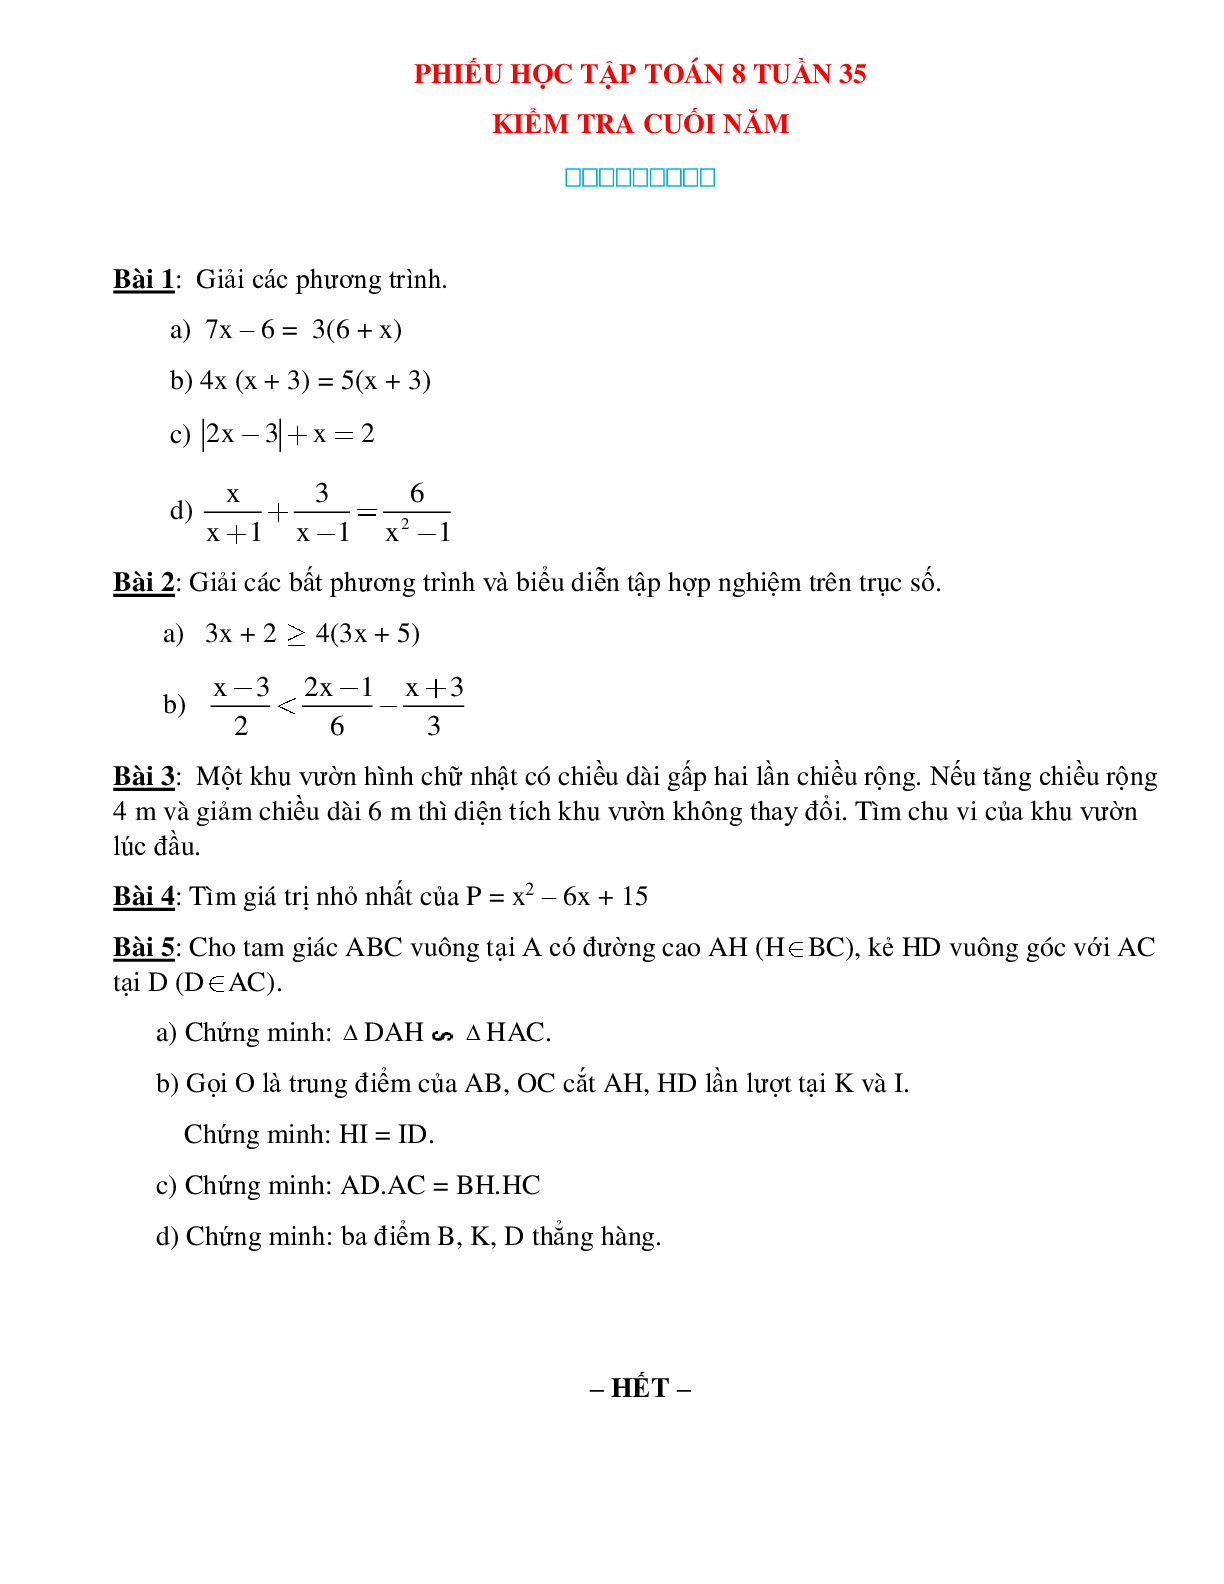 Phiếu bài tập tuần 35 - Toán 8 (trang 1)